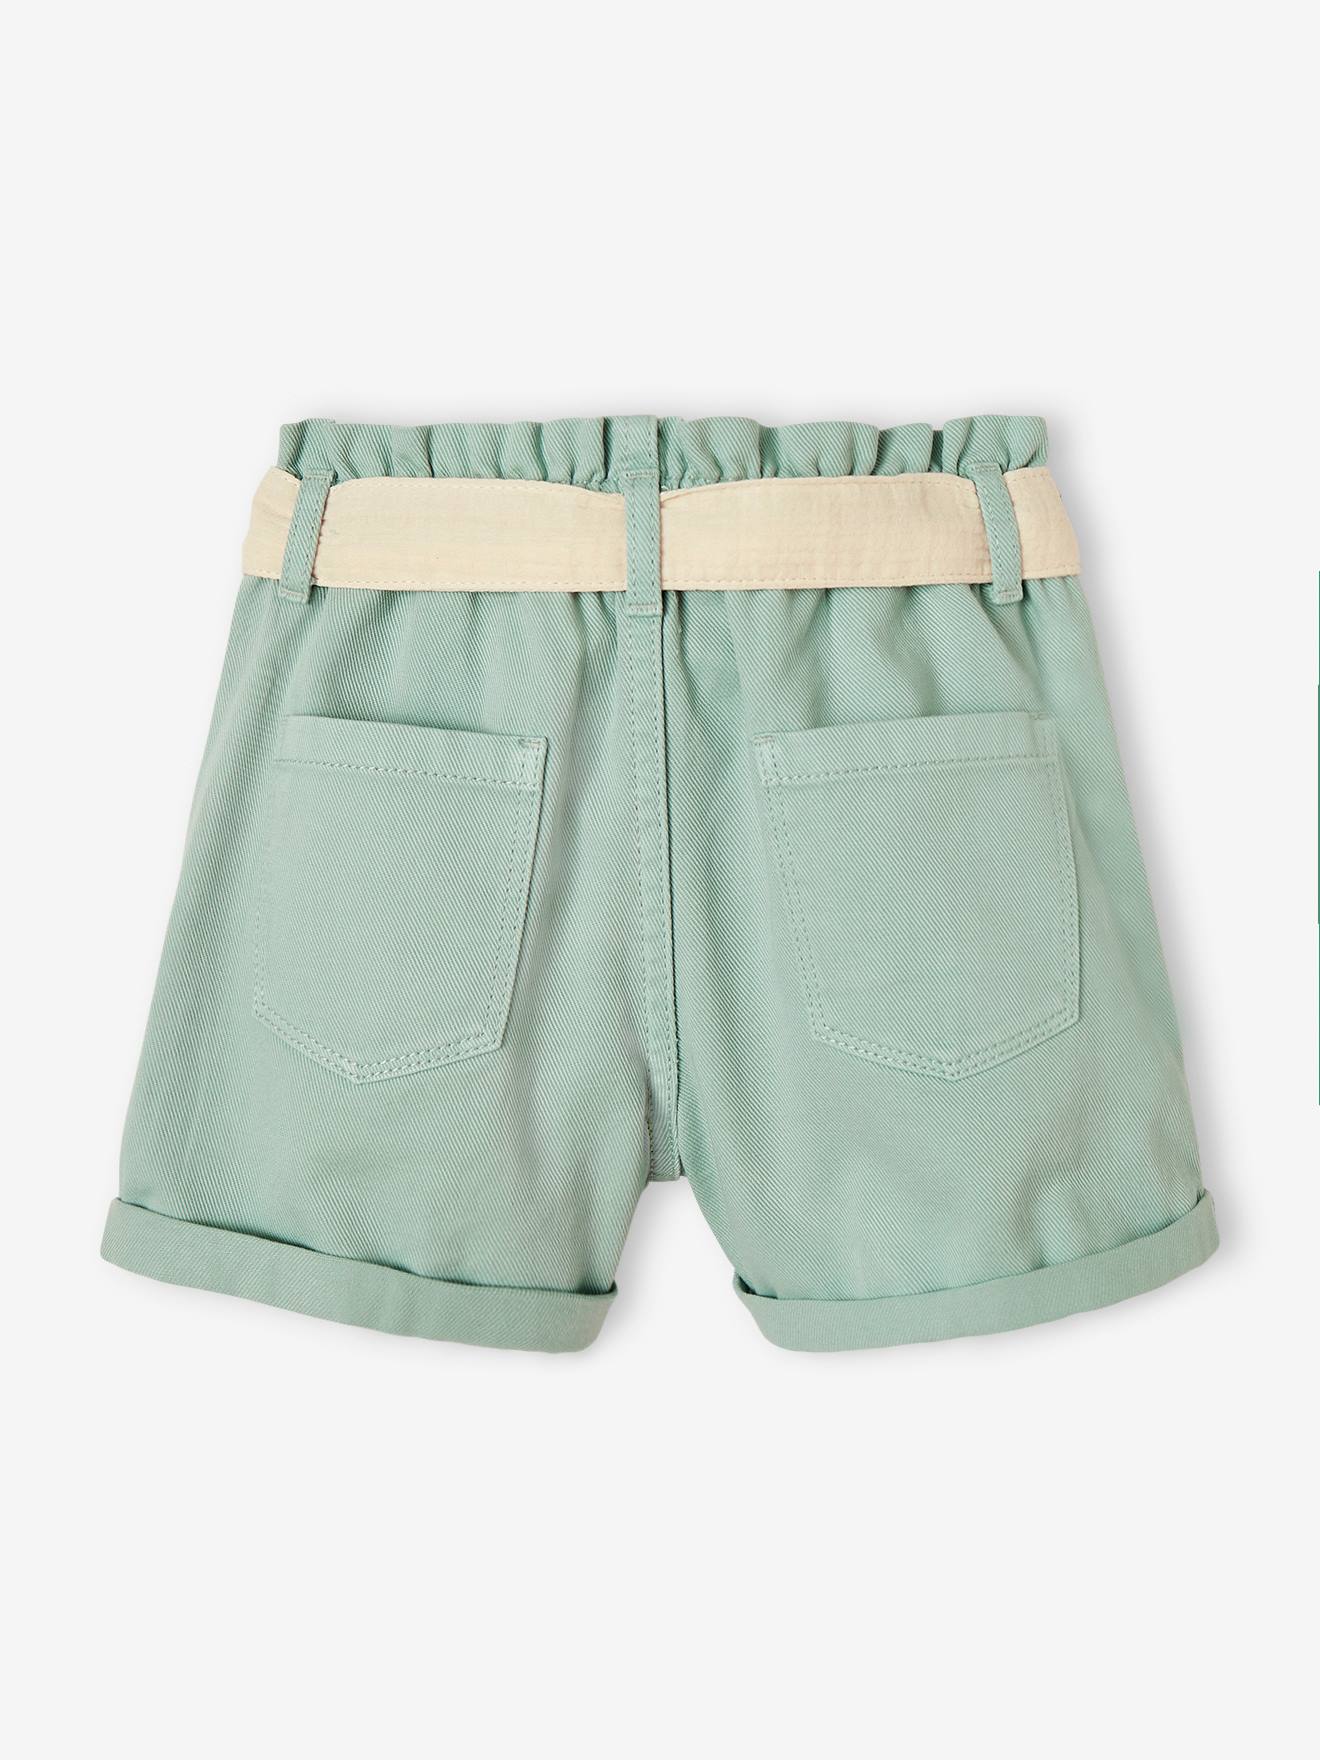 Girls Paperbag Denim Shorts Sand Short High Waist Belted Paper Bag Hot Pants